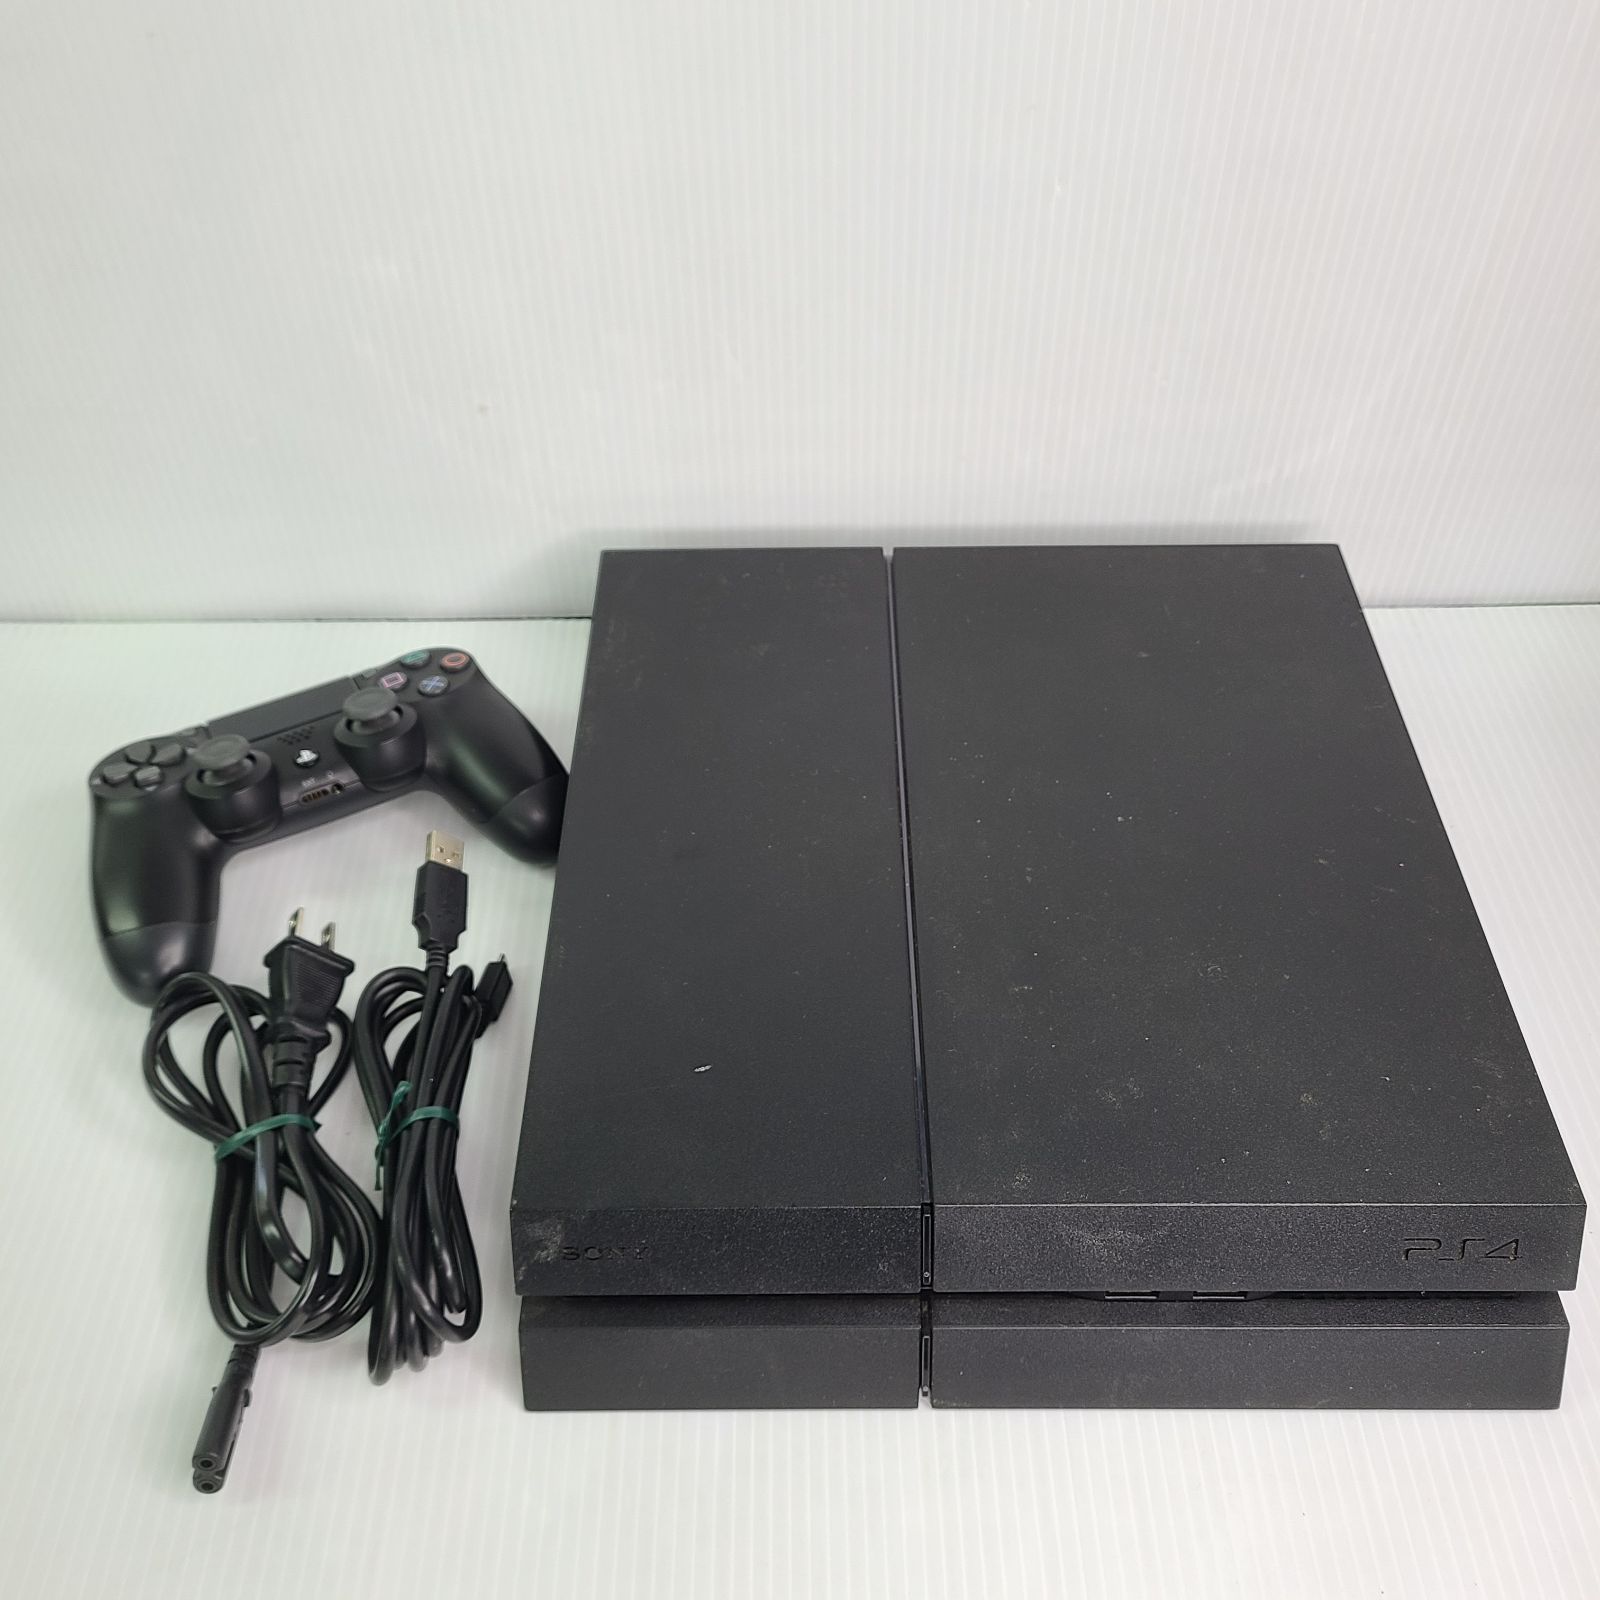 お買い得人気SONY ソニー Playstation4 プレイステーション4 PS4 500GB グレイシャーホワイト オマケ コントローラー グリップ 付属品完備セット PS4本体